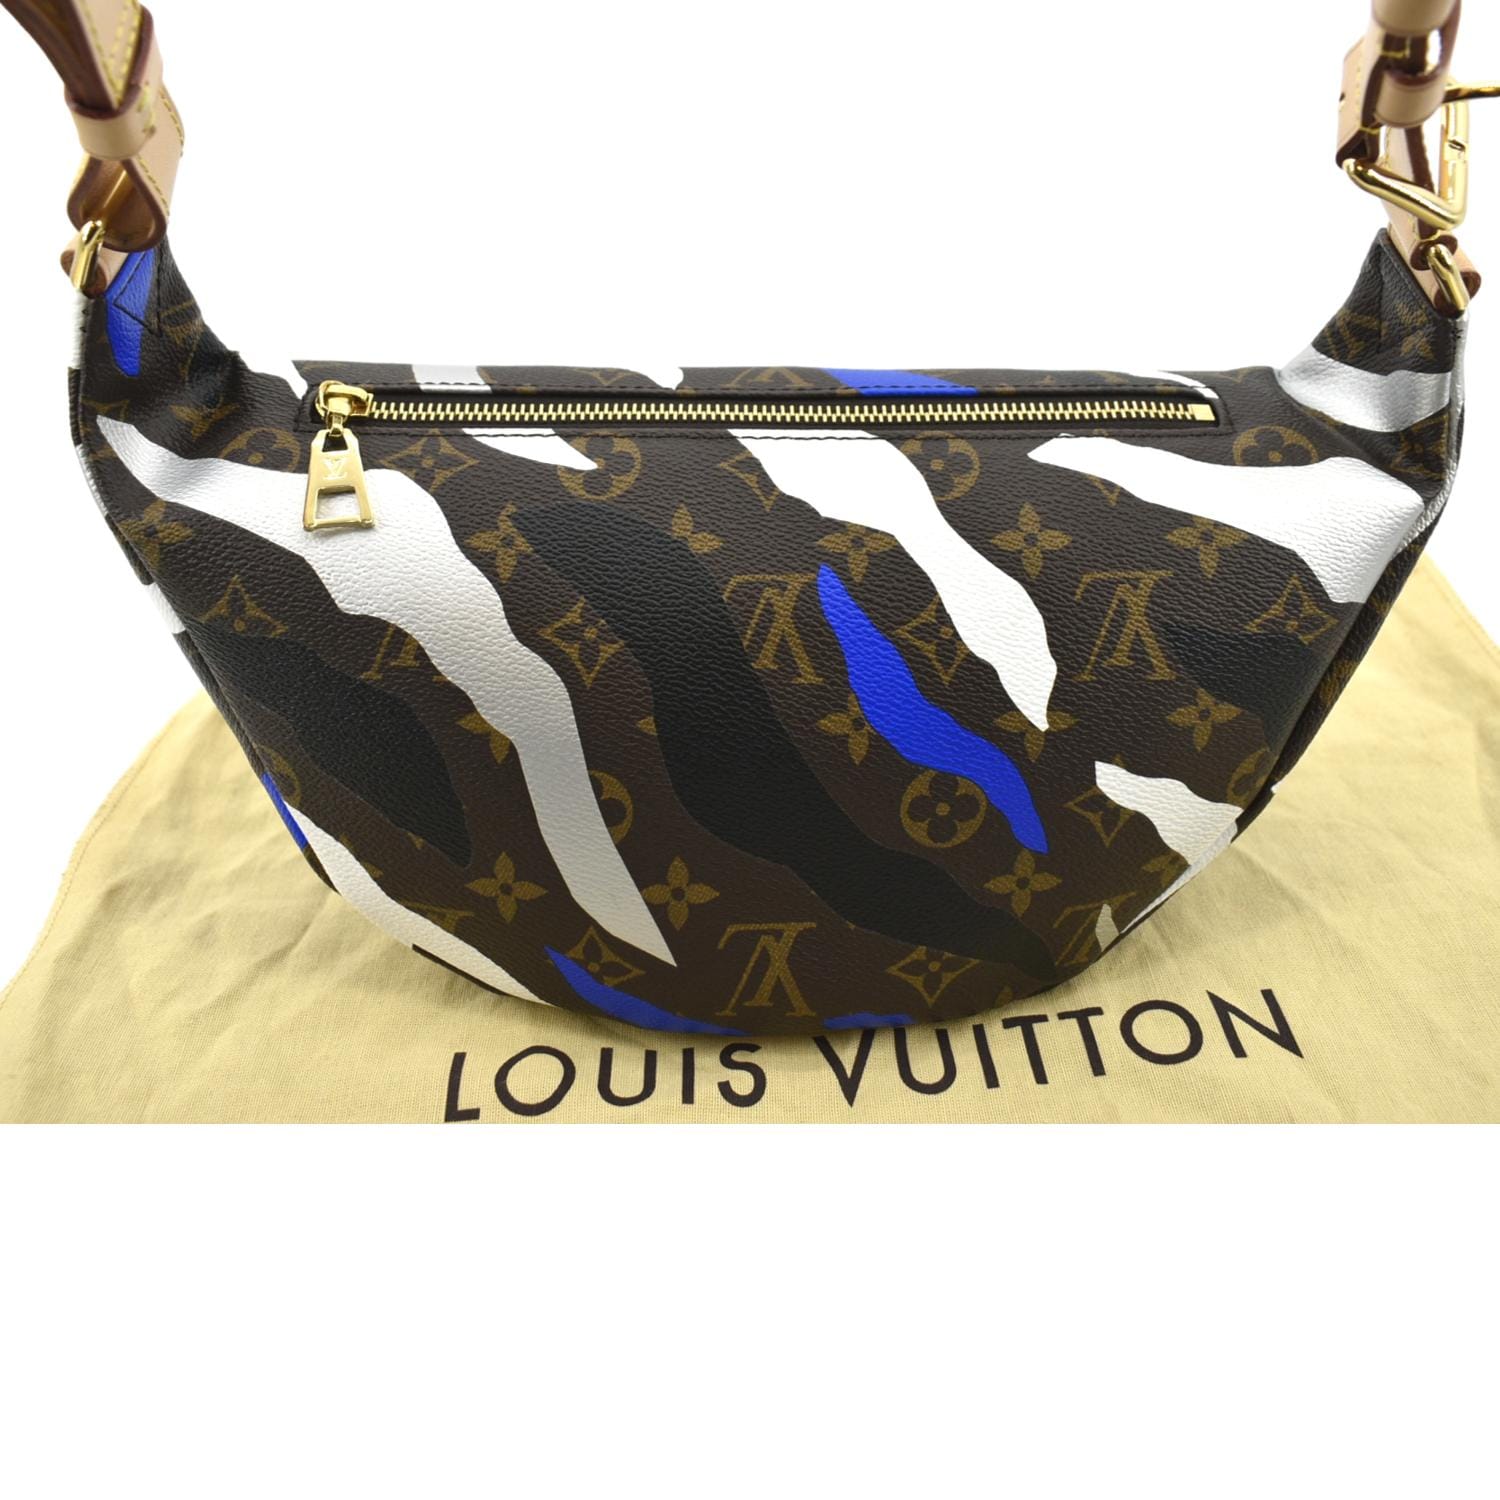 Louis Vuitton x League of Legends Bumbag! : r/luxurypurses